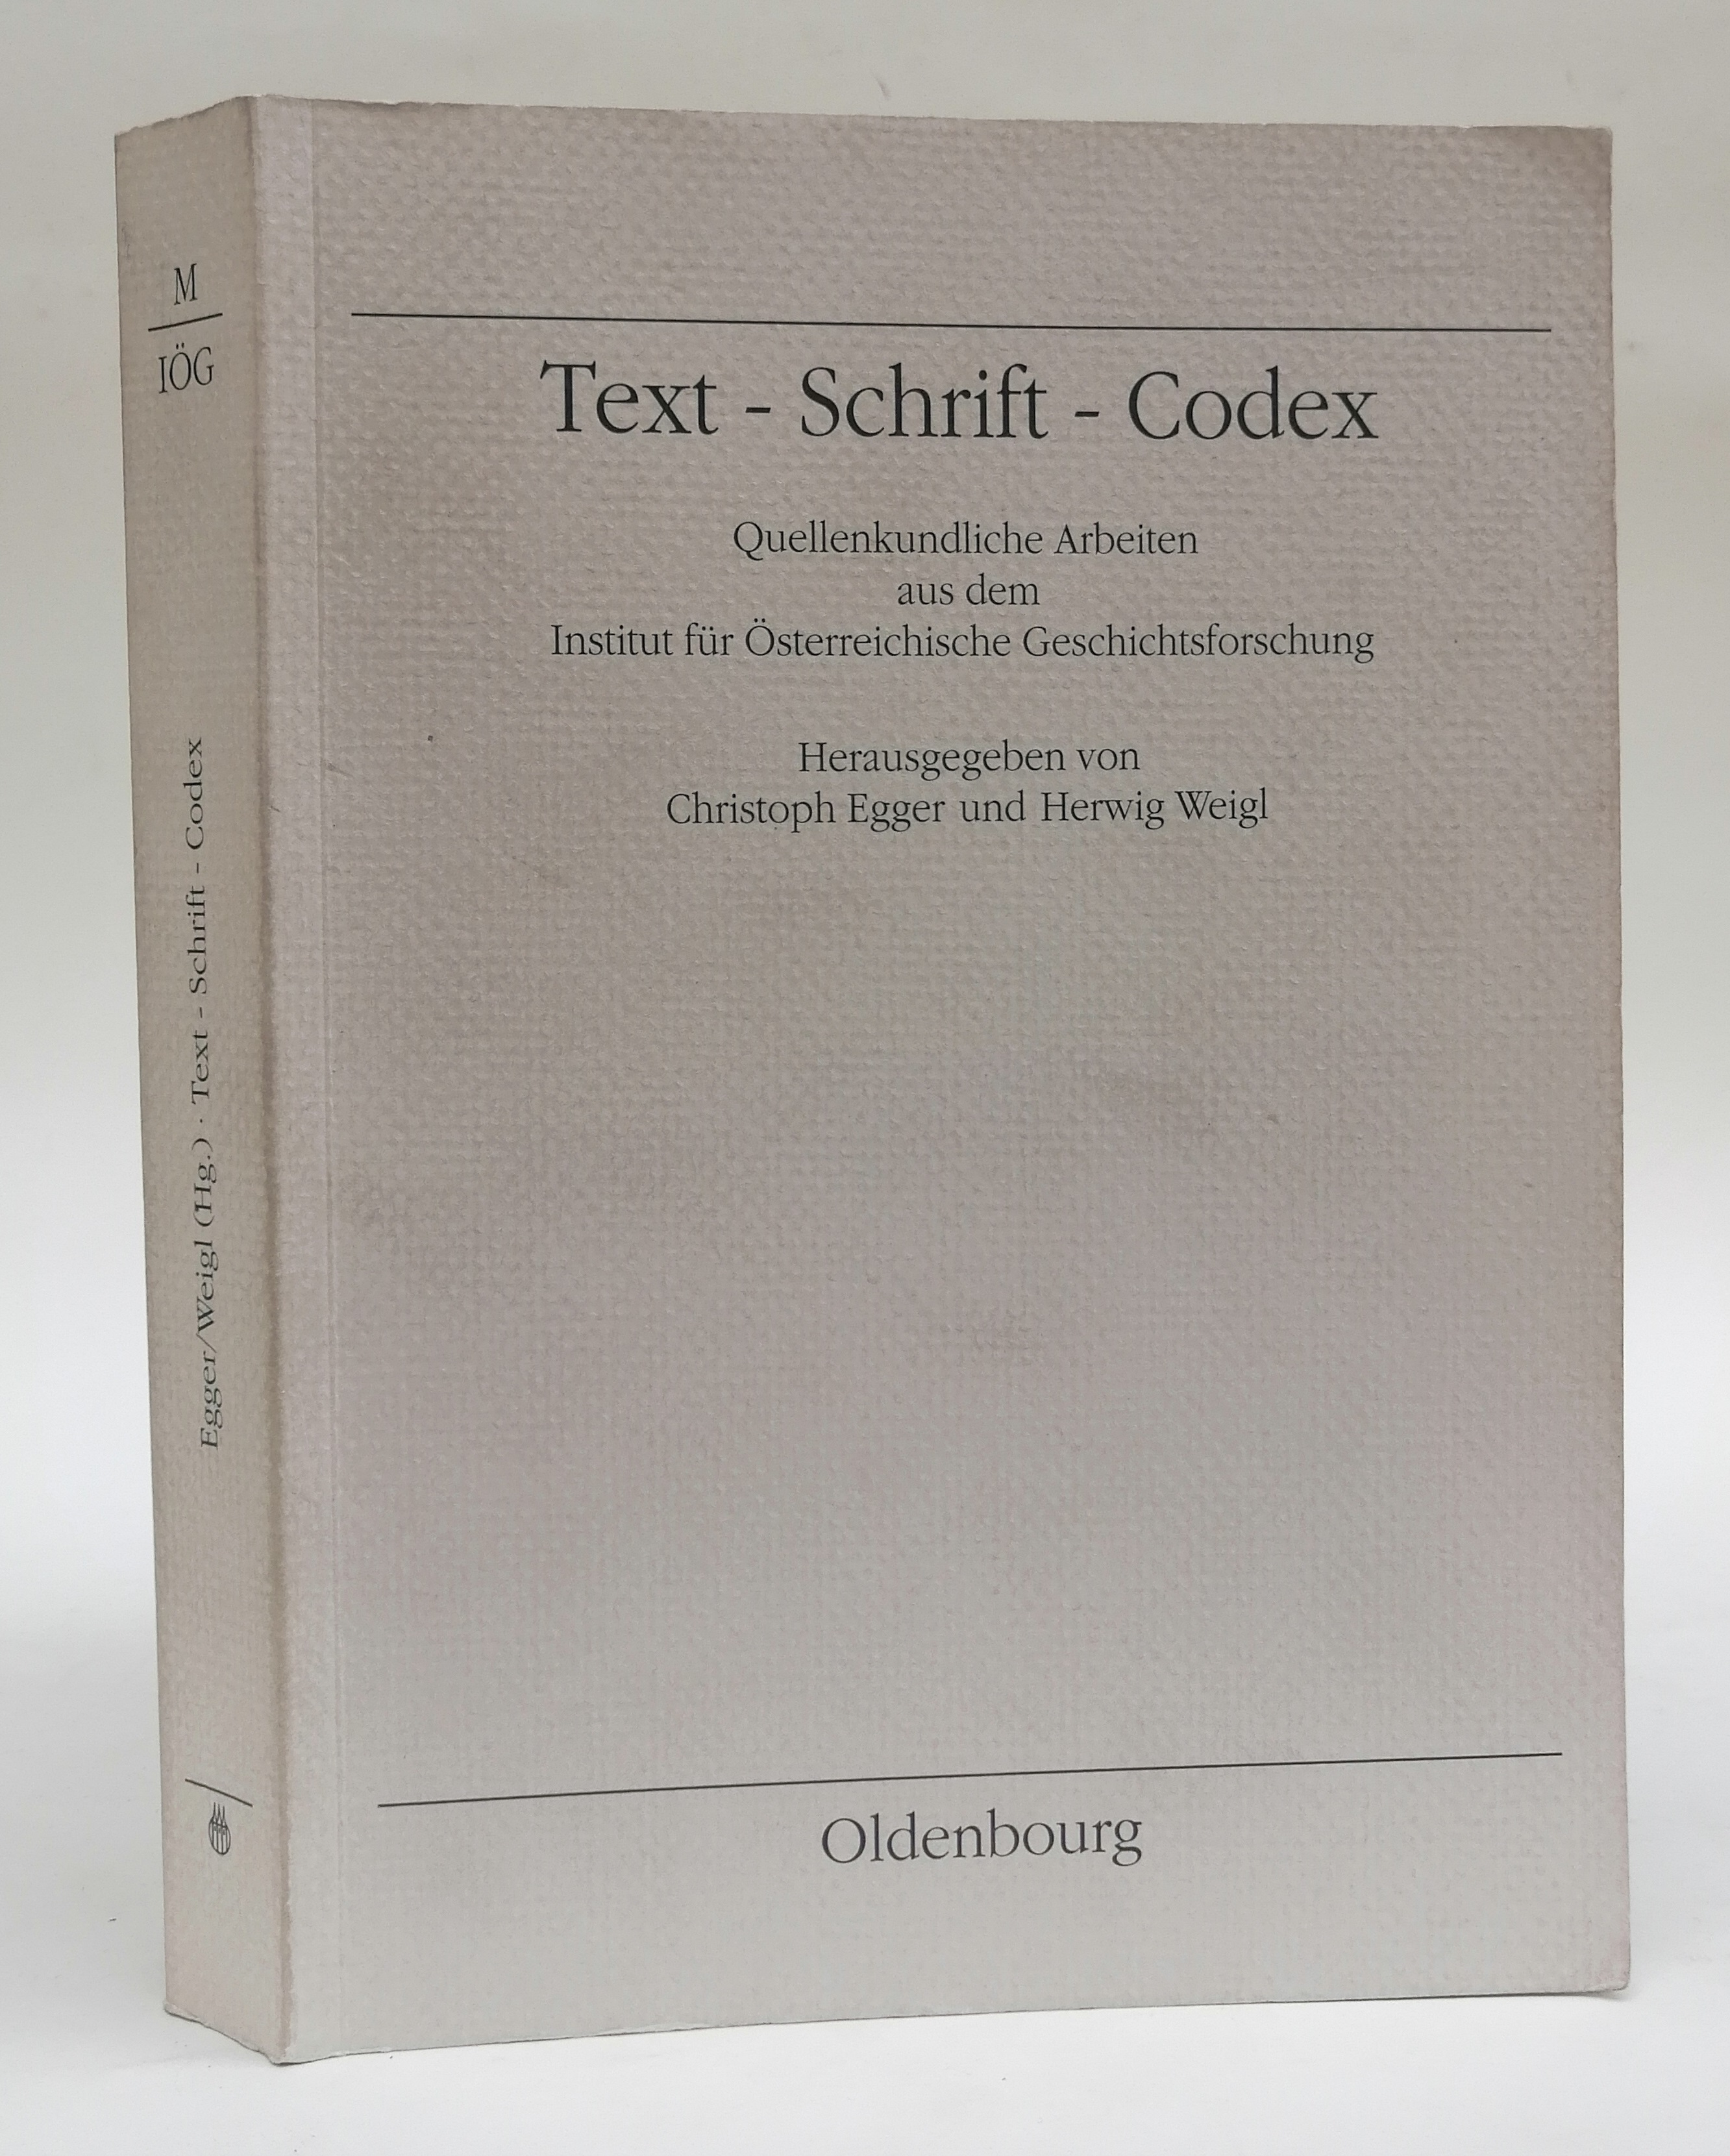 Text - Schrift - Codex. Quellenkundliche Arbeiten aus dem Institut für Österreichische Geschichtsforschung. - Egger, Christoph / Weigl, Herwig (Hg.)